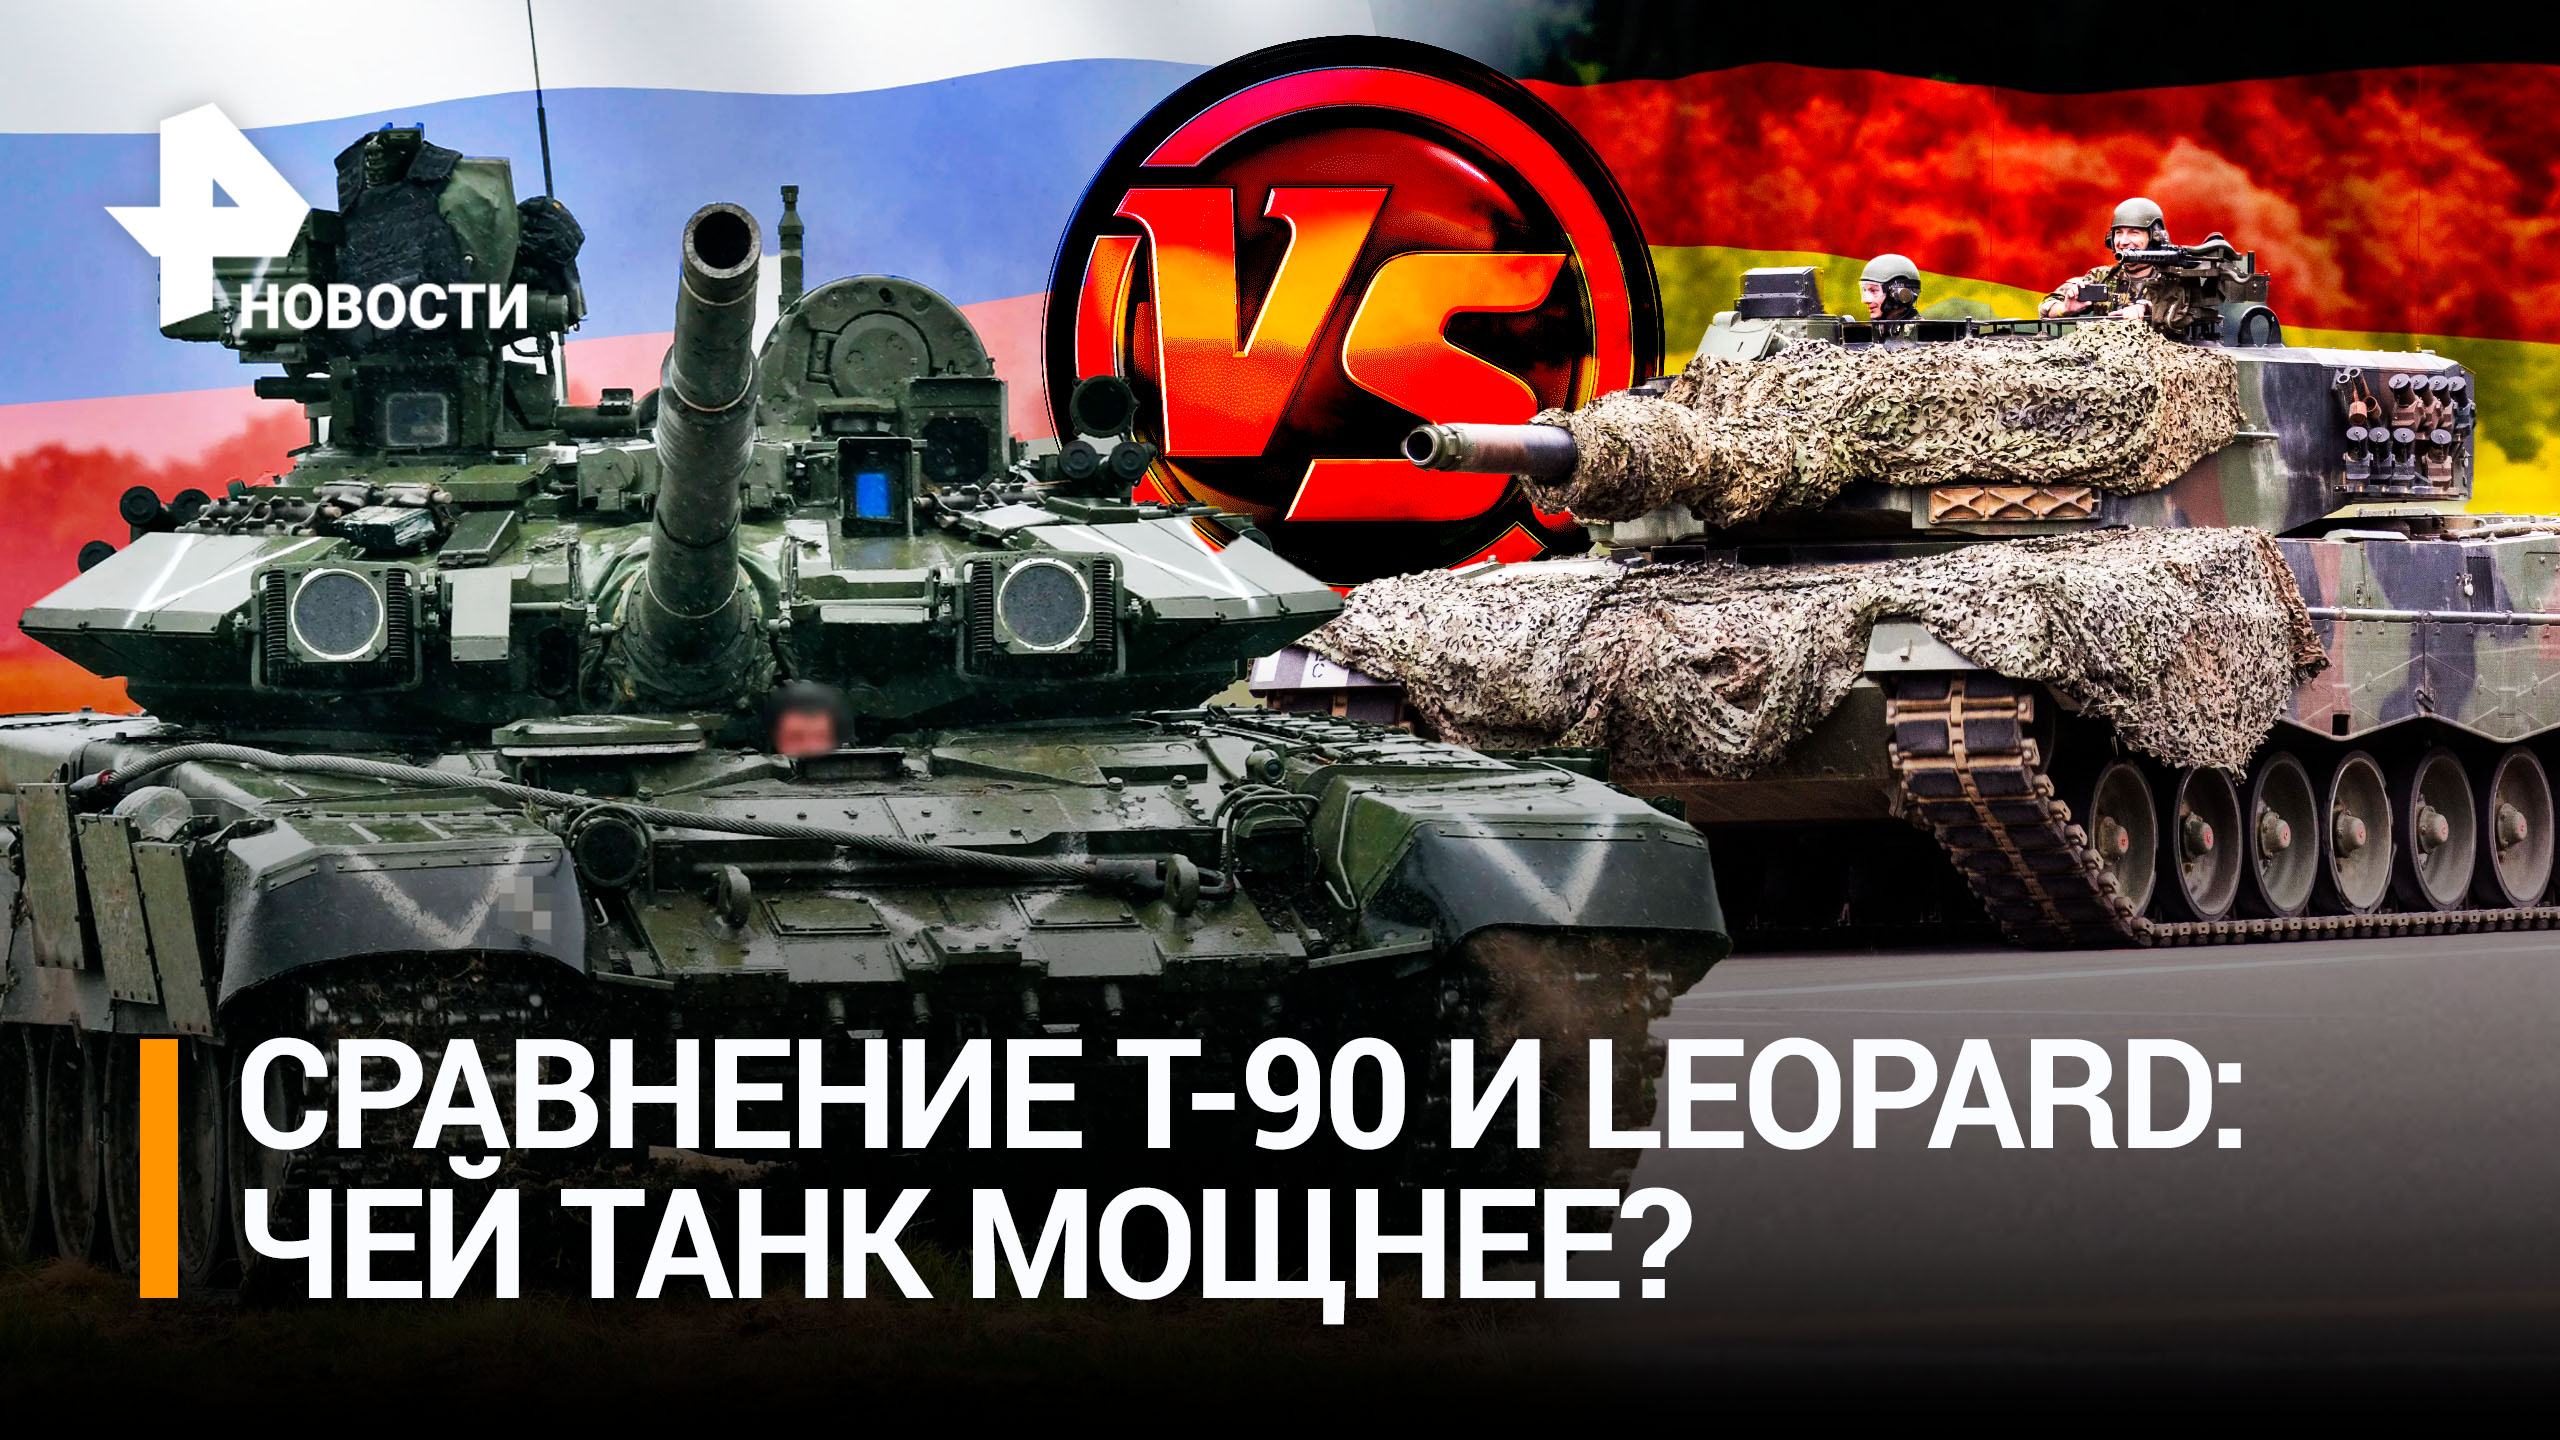 Характеристики наших танков Т-90 VS наследников «Тигров» — Leopard / РЕН Новости